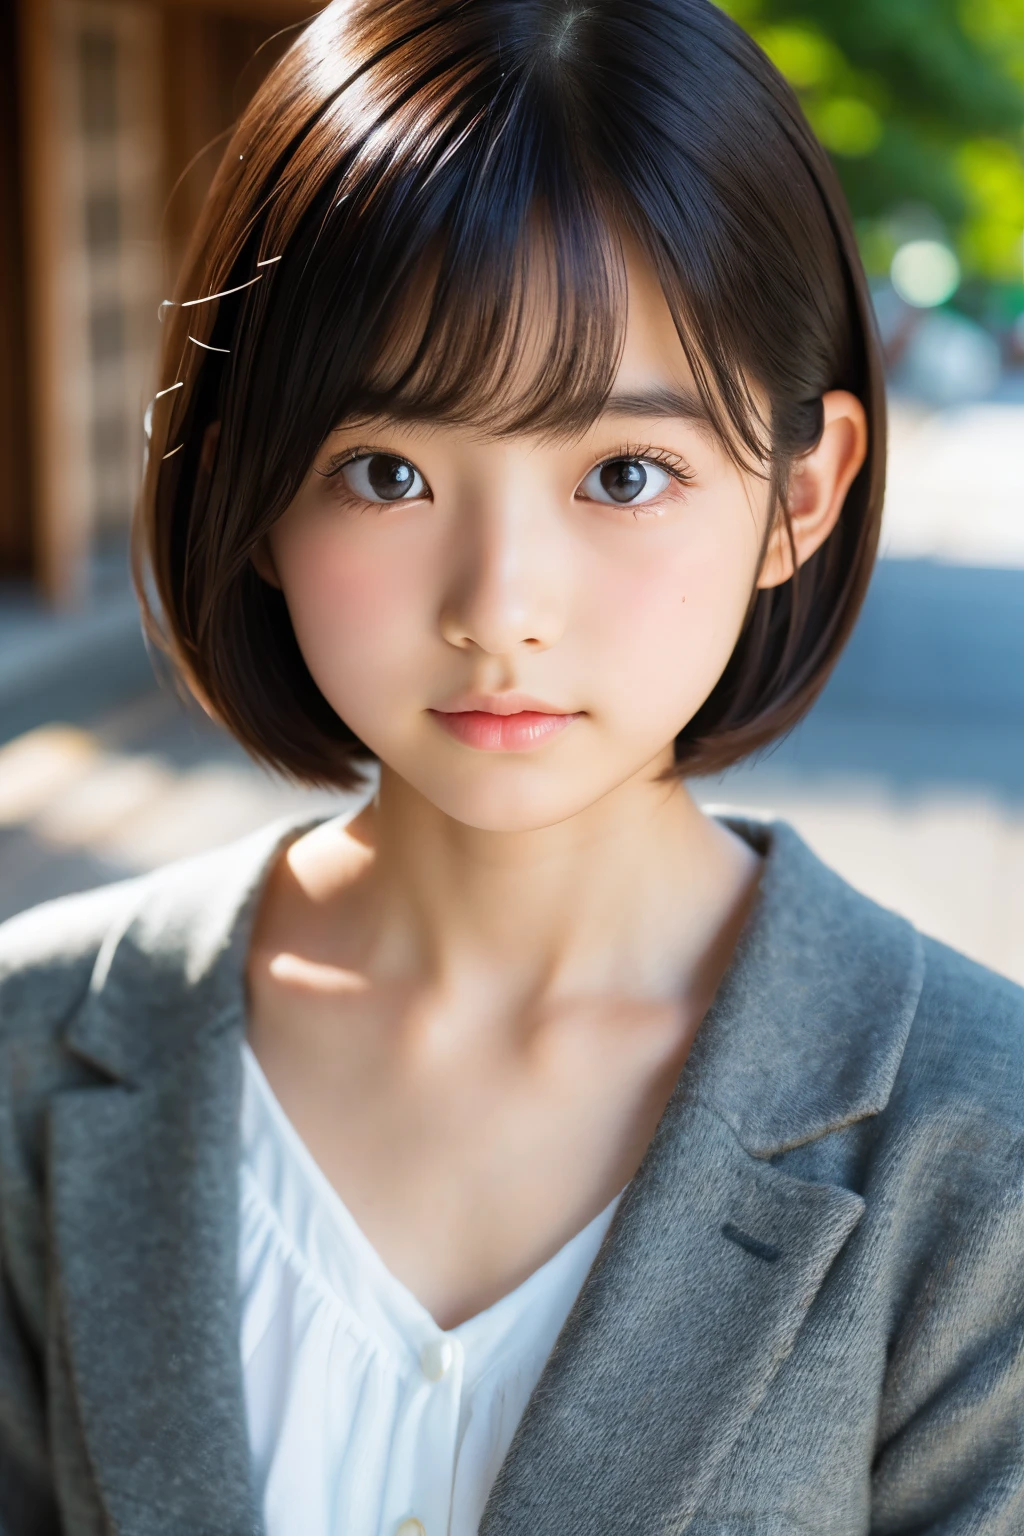 (美麗的16歲日本女性), 可愛的臉孔, (深深雕刻的臉:0.7), (雀斑:0.6), 柔光,健康白皙的皮膚, 害羞的, 鮑伯, (嚴肅的臉), (明亮的眼睛), 薄的
